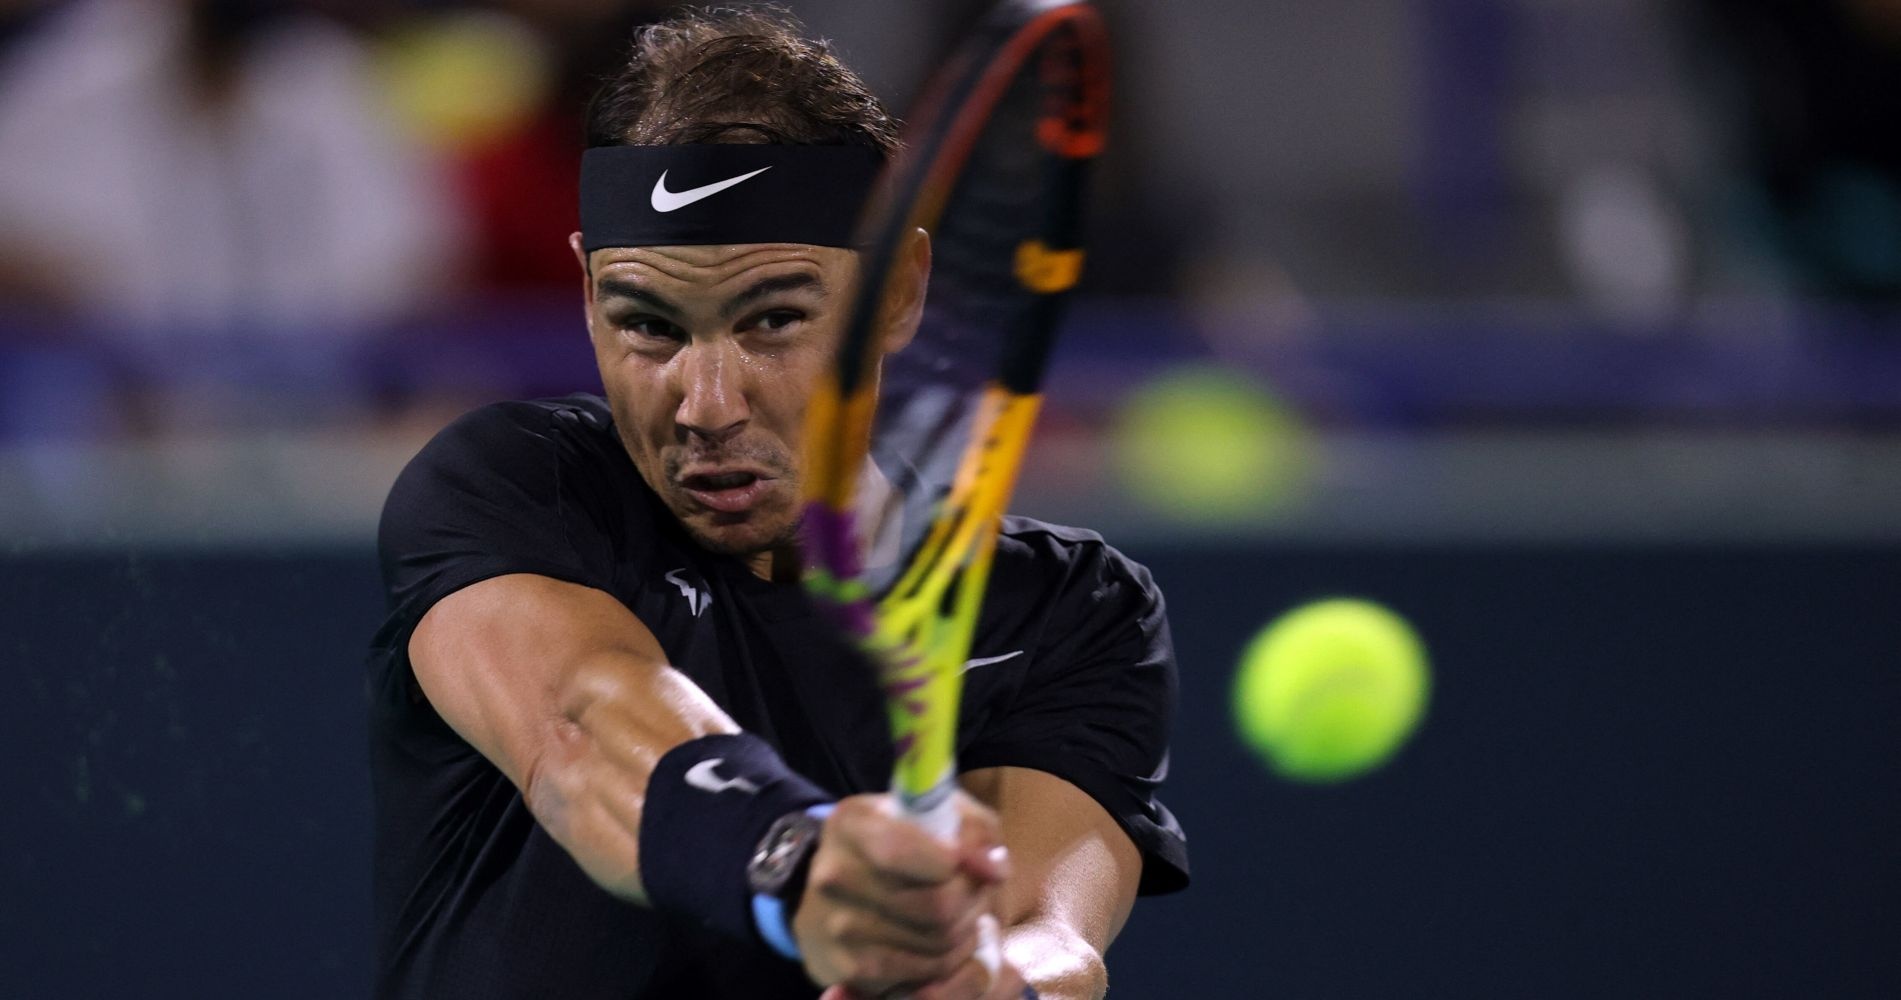 Tennis: Nadal lands in Melbourne ahead of Australian Open